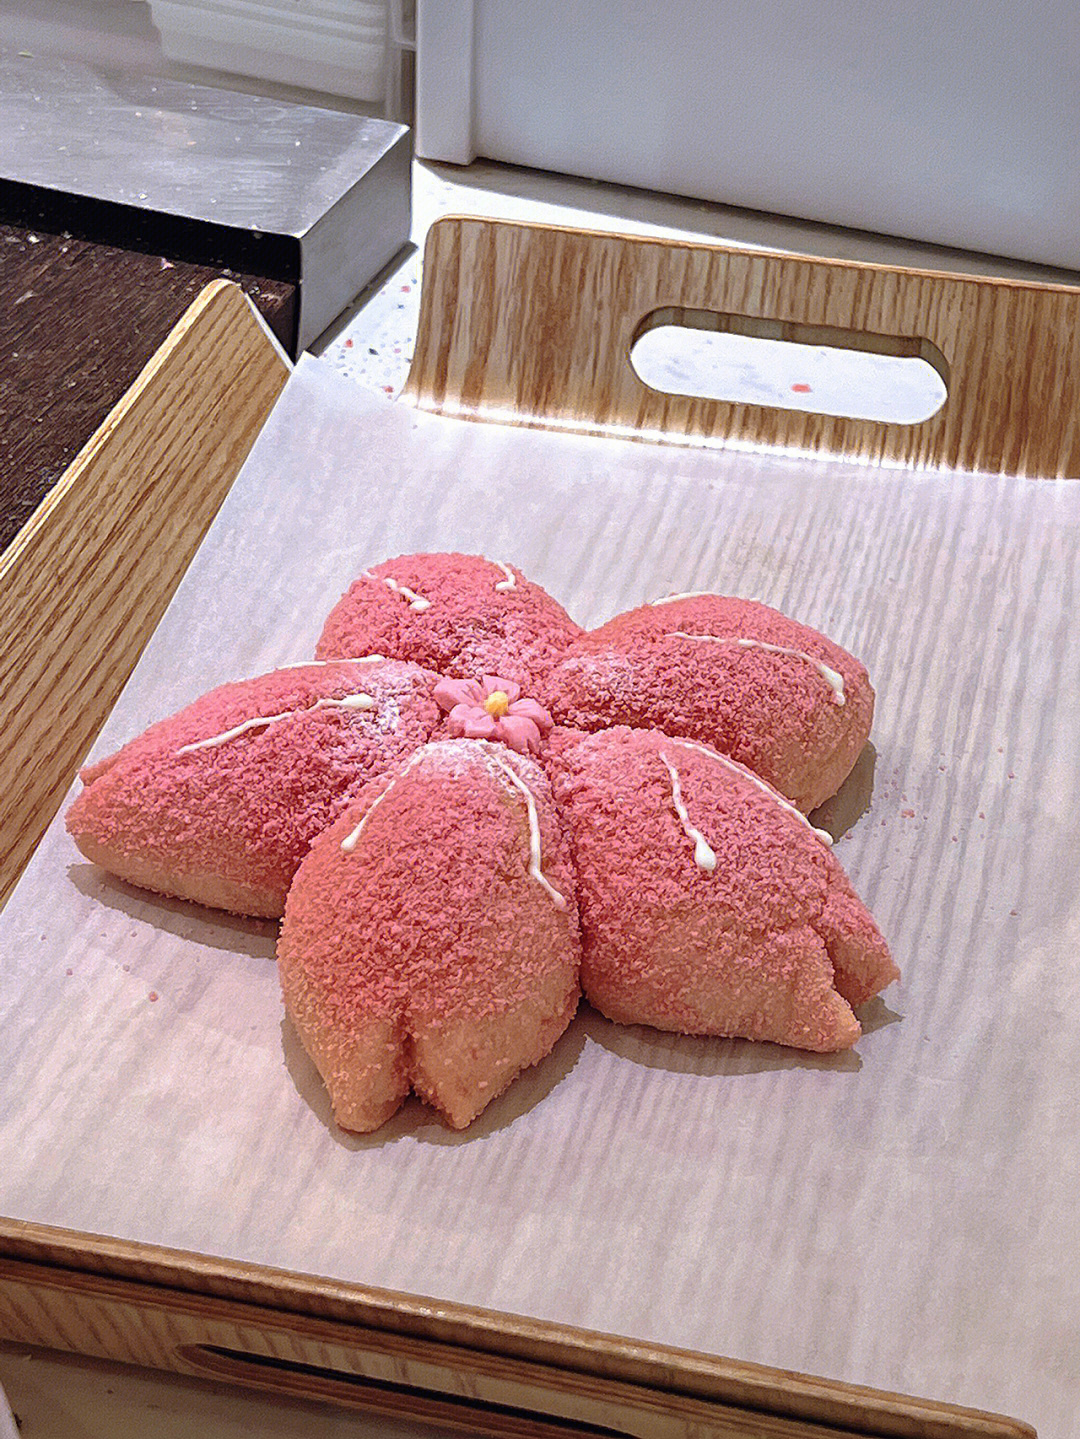 奈雪的茶樱花面包图片